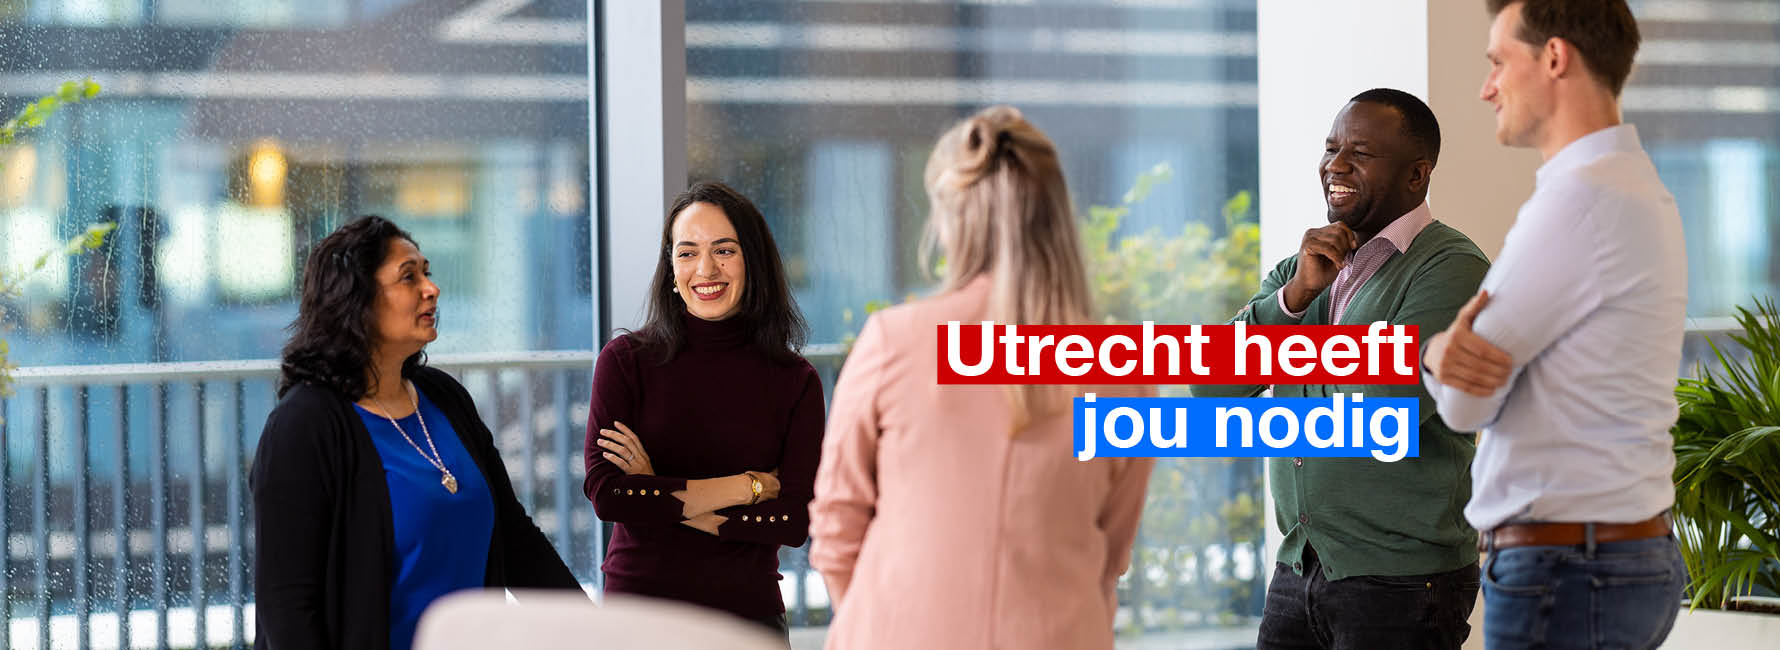 Een groep mensen staat te praten in het stadskantoor. In beeld staat de tekst Utrecht heeft jou nodig.